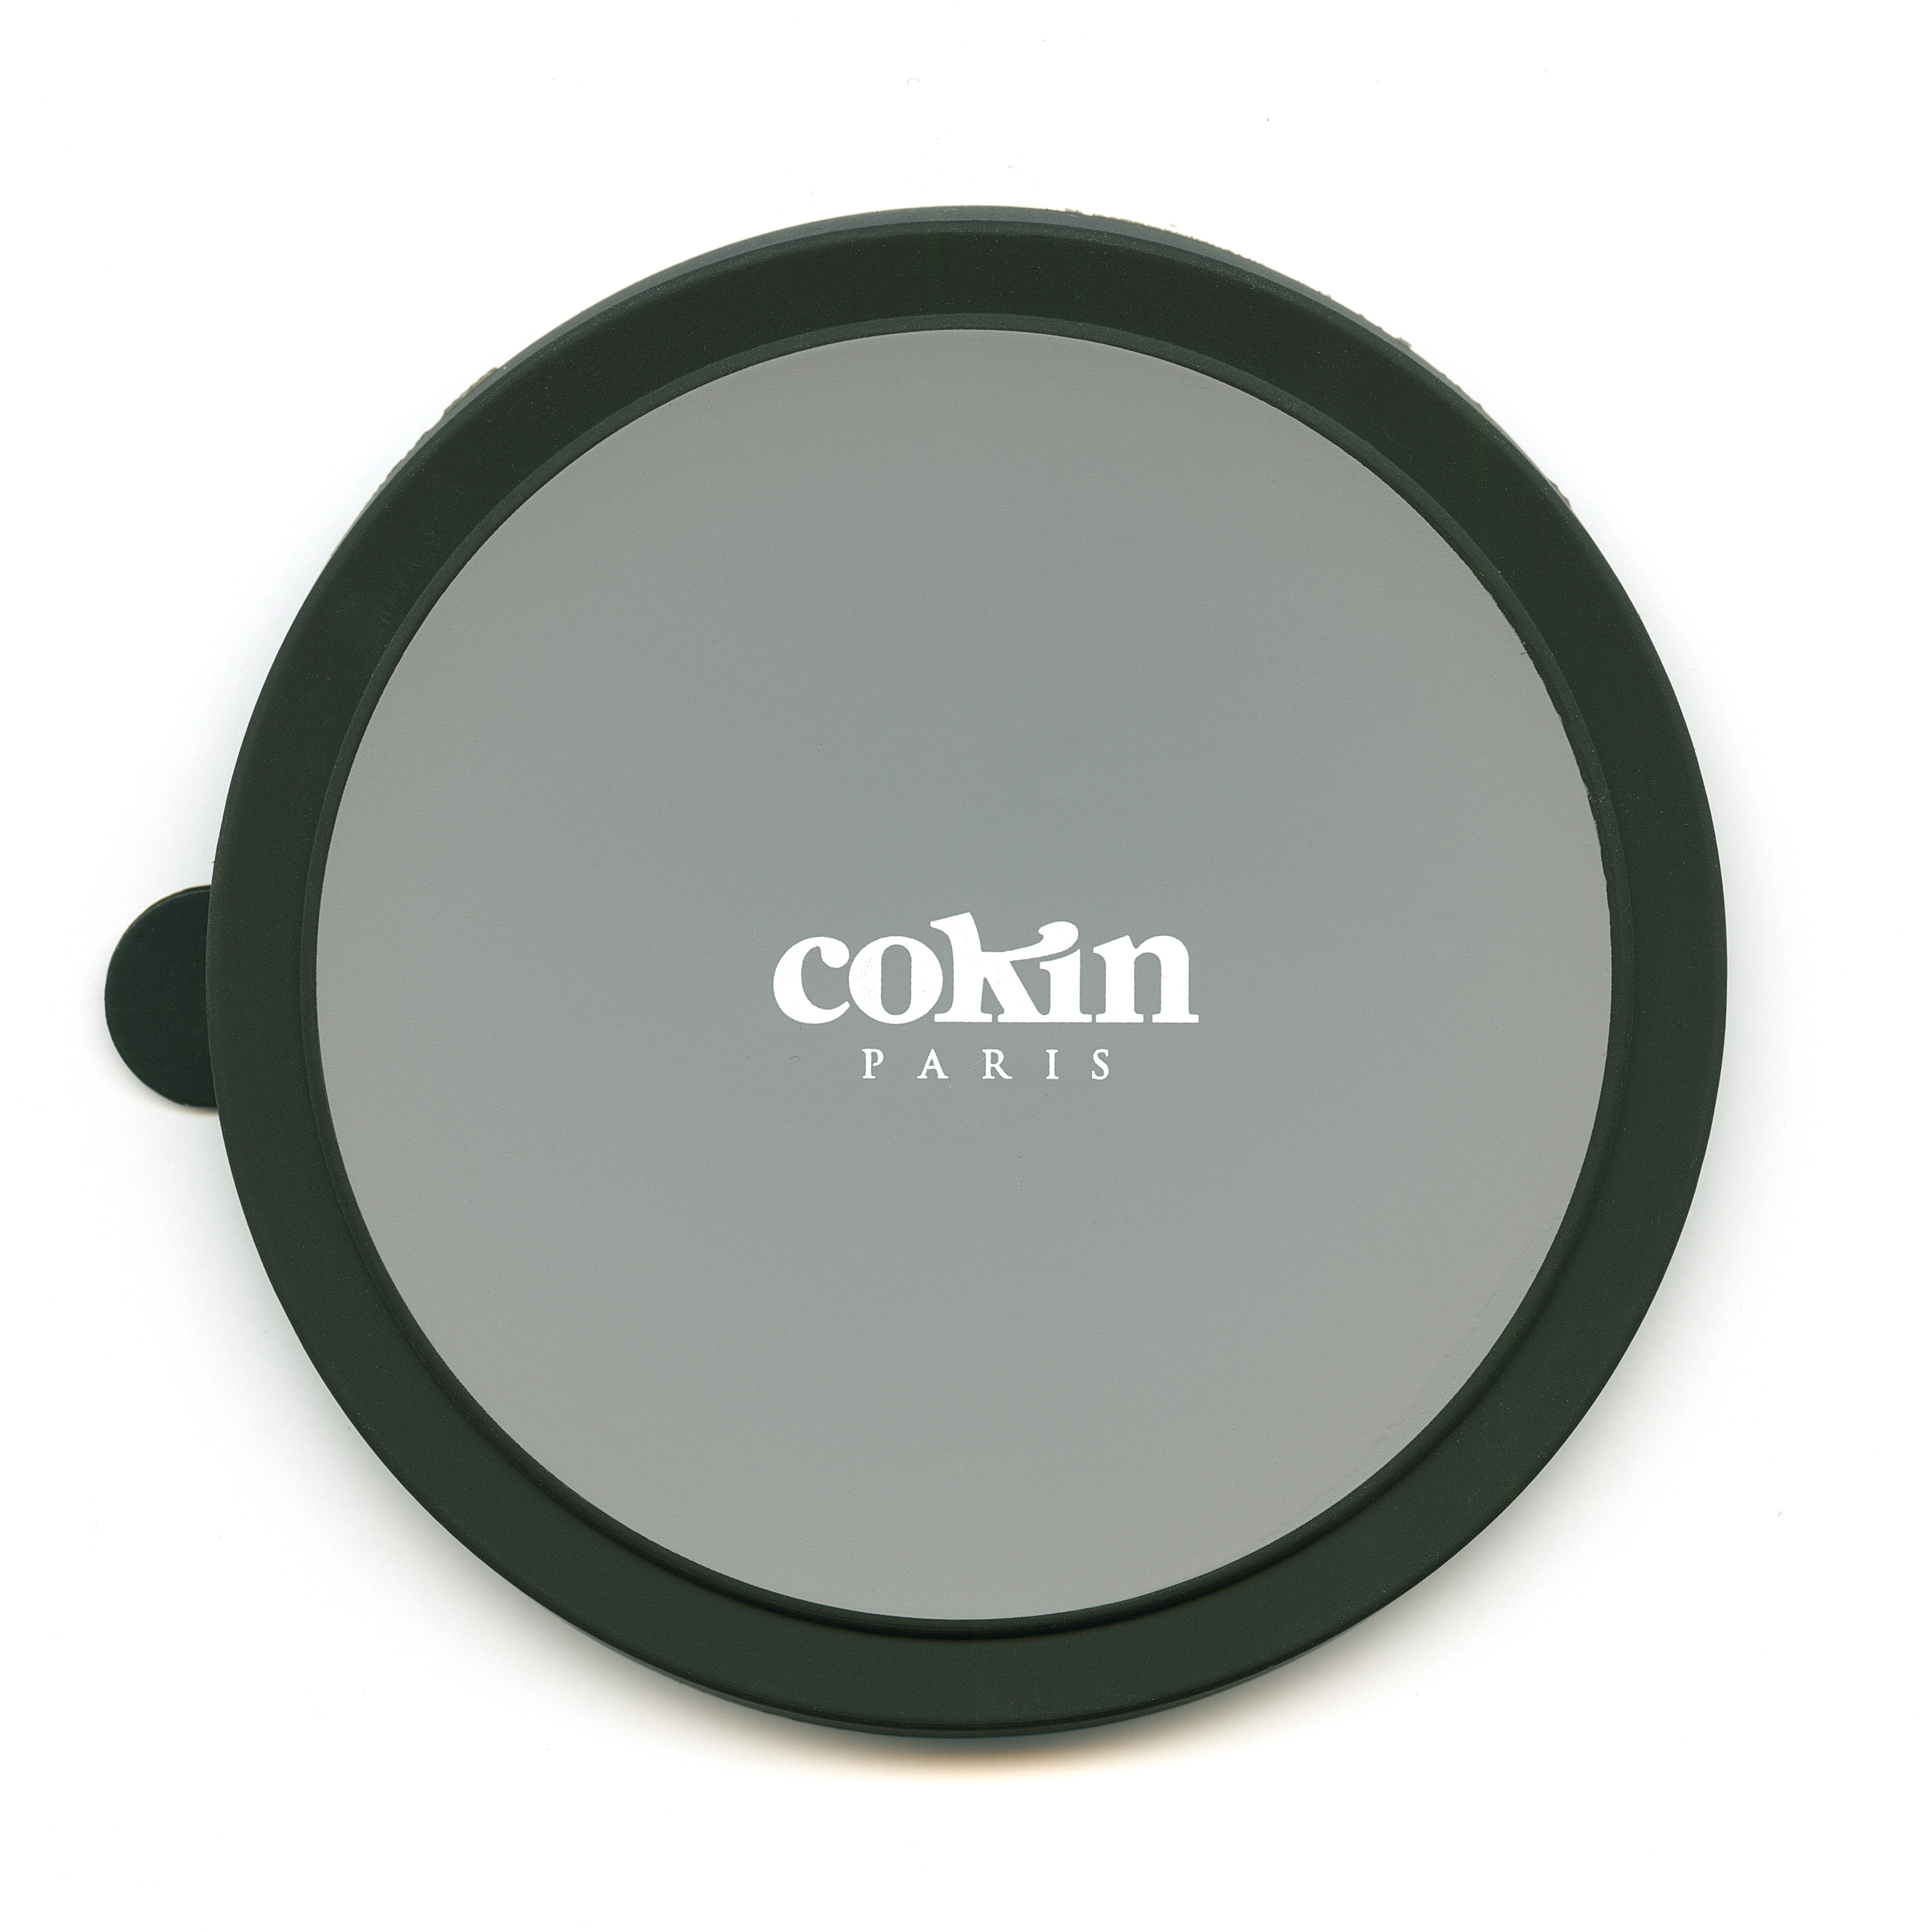 Cokin NX adaptor ring cap